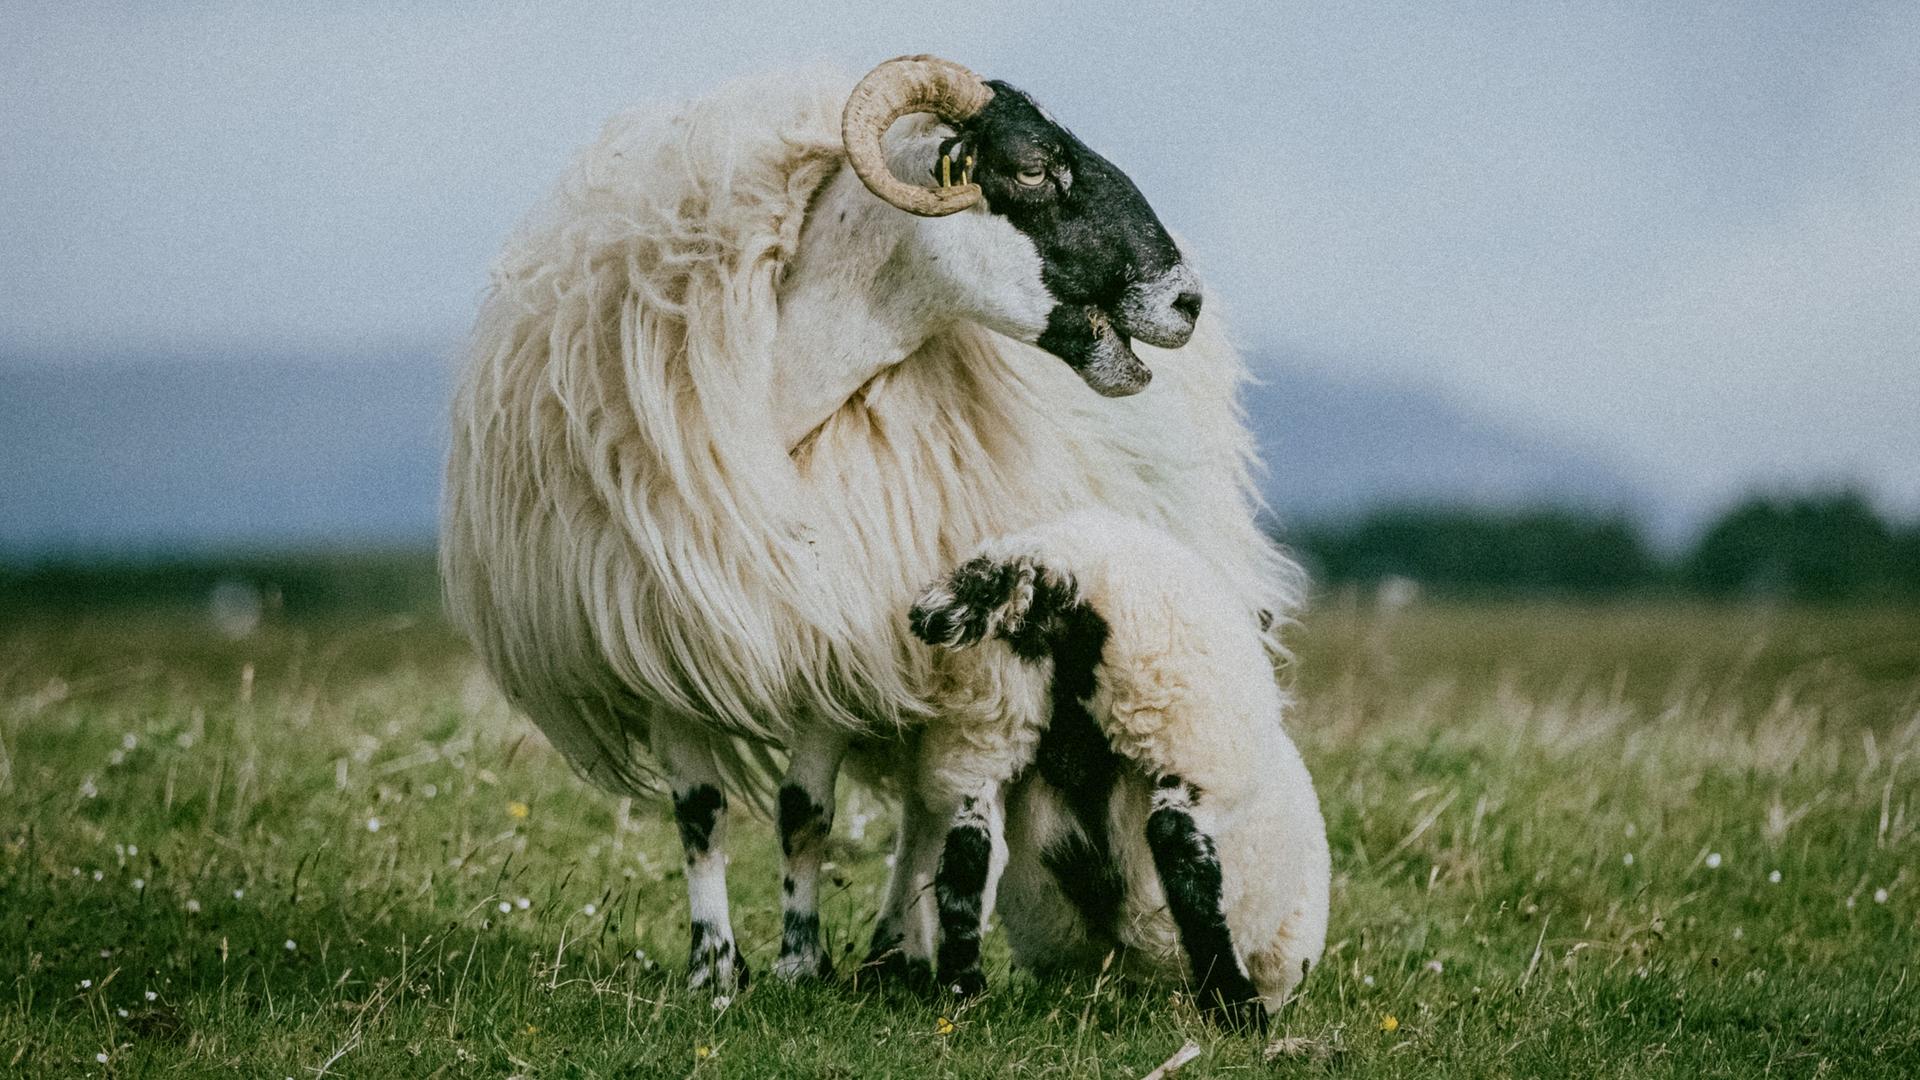 Ein Schaf der Rasse Scottish Blackface mit langem Fell, einem schwarzen Gesicht und gekrümmten Hörnern steht mit seinem Lamm auf einer Wiese